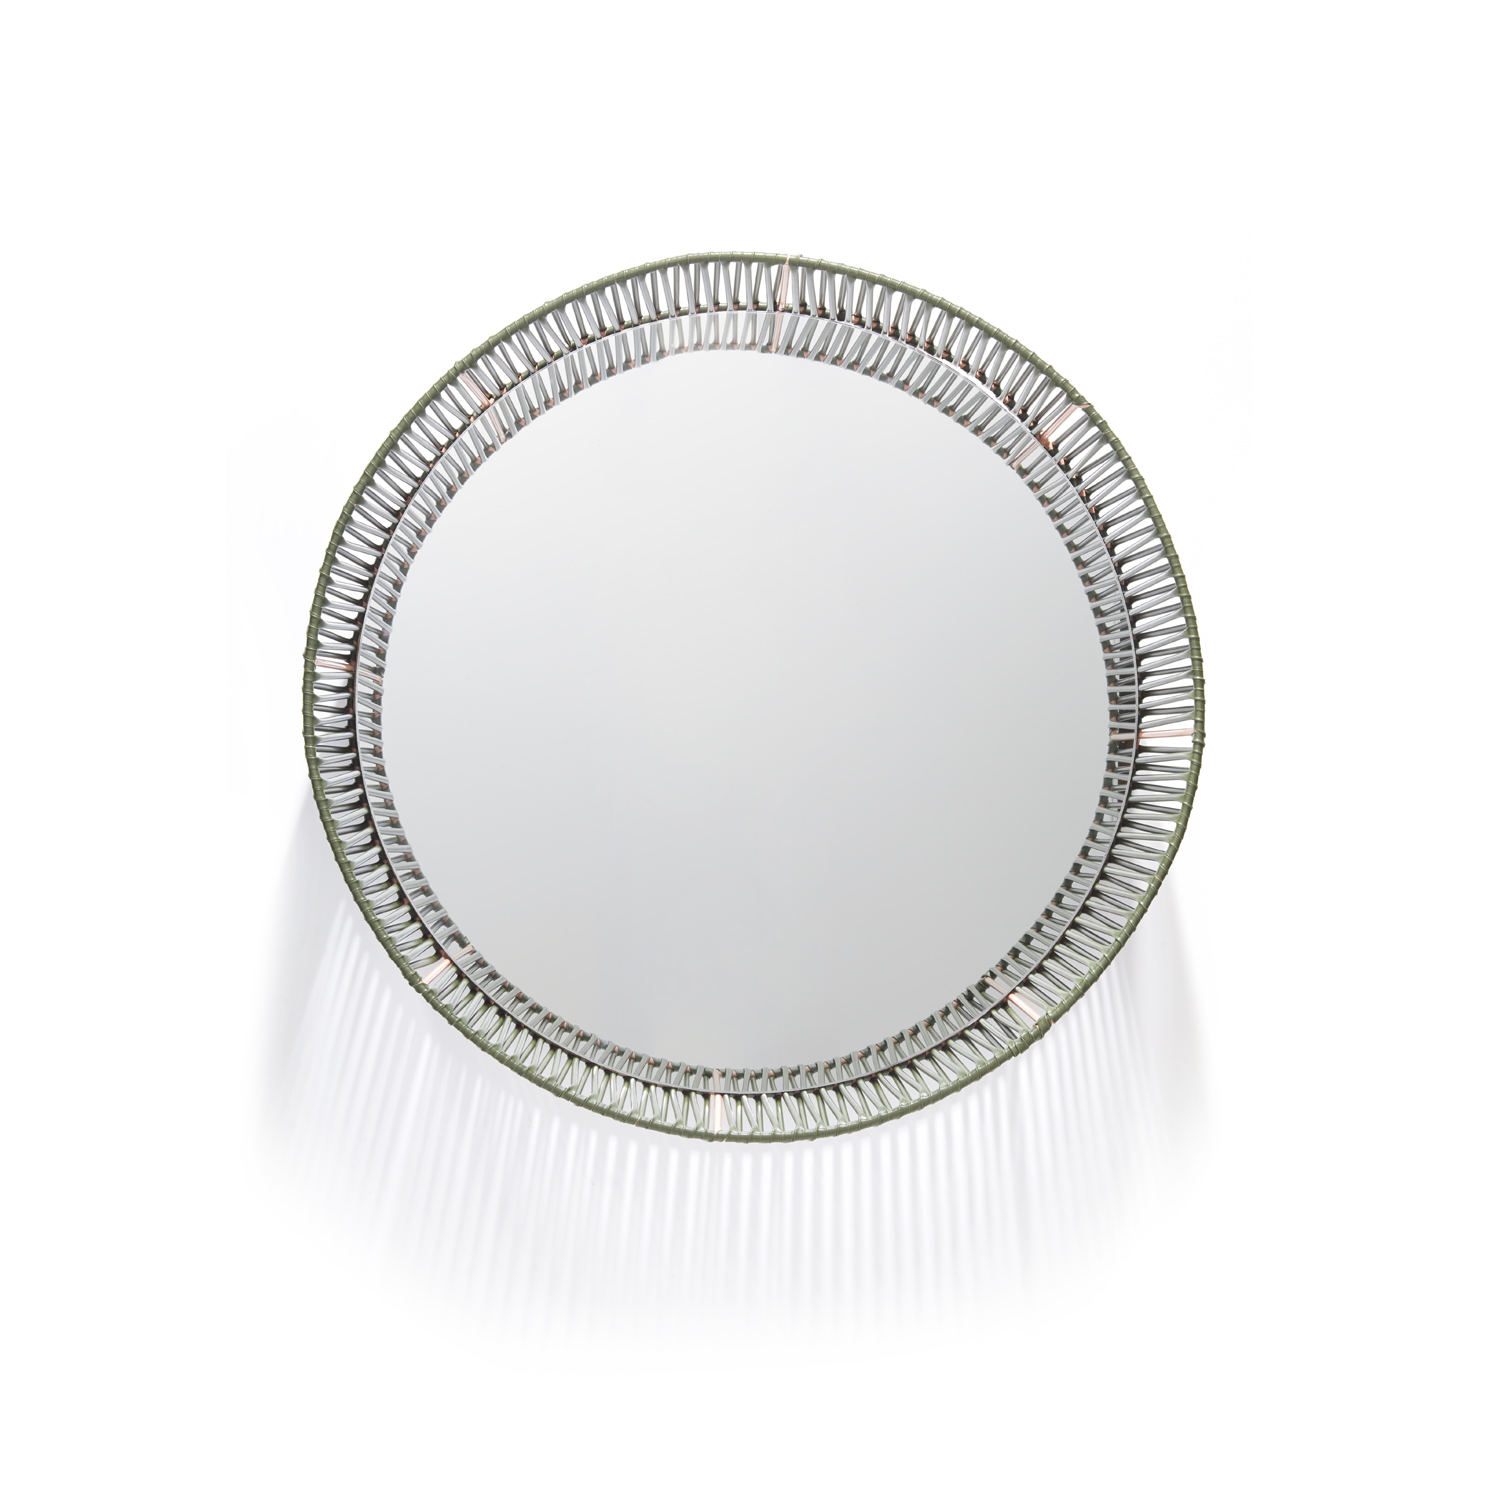 Cesta - Wall Mirror Round